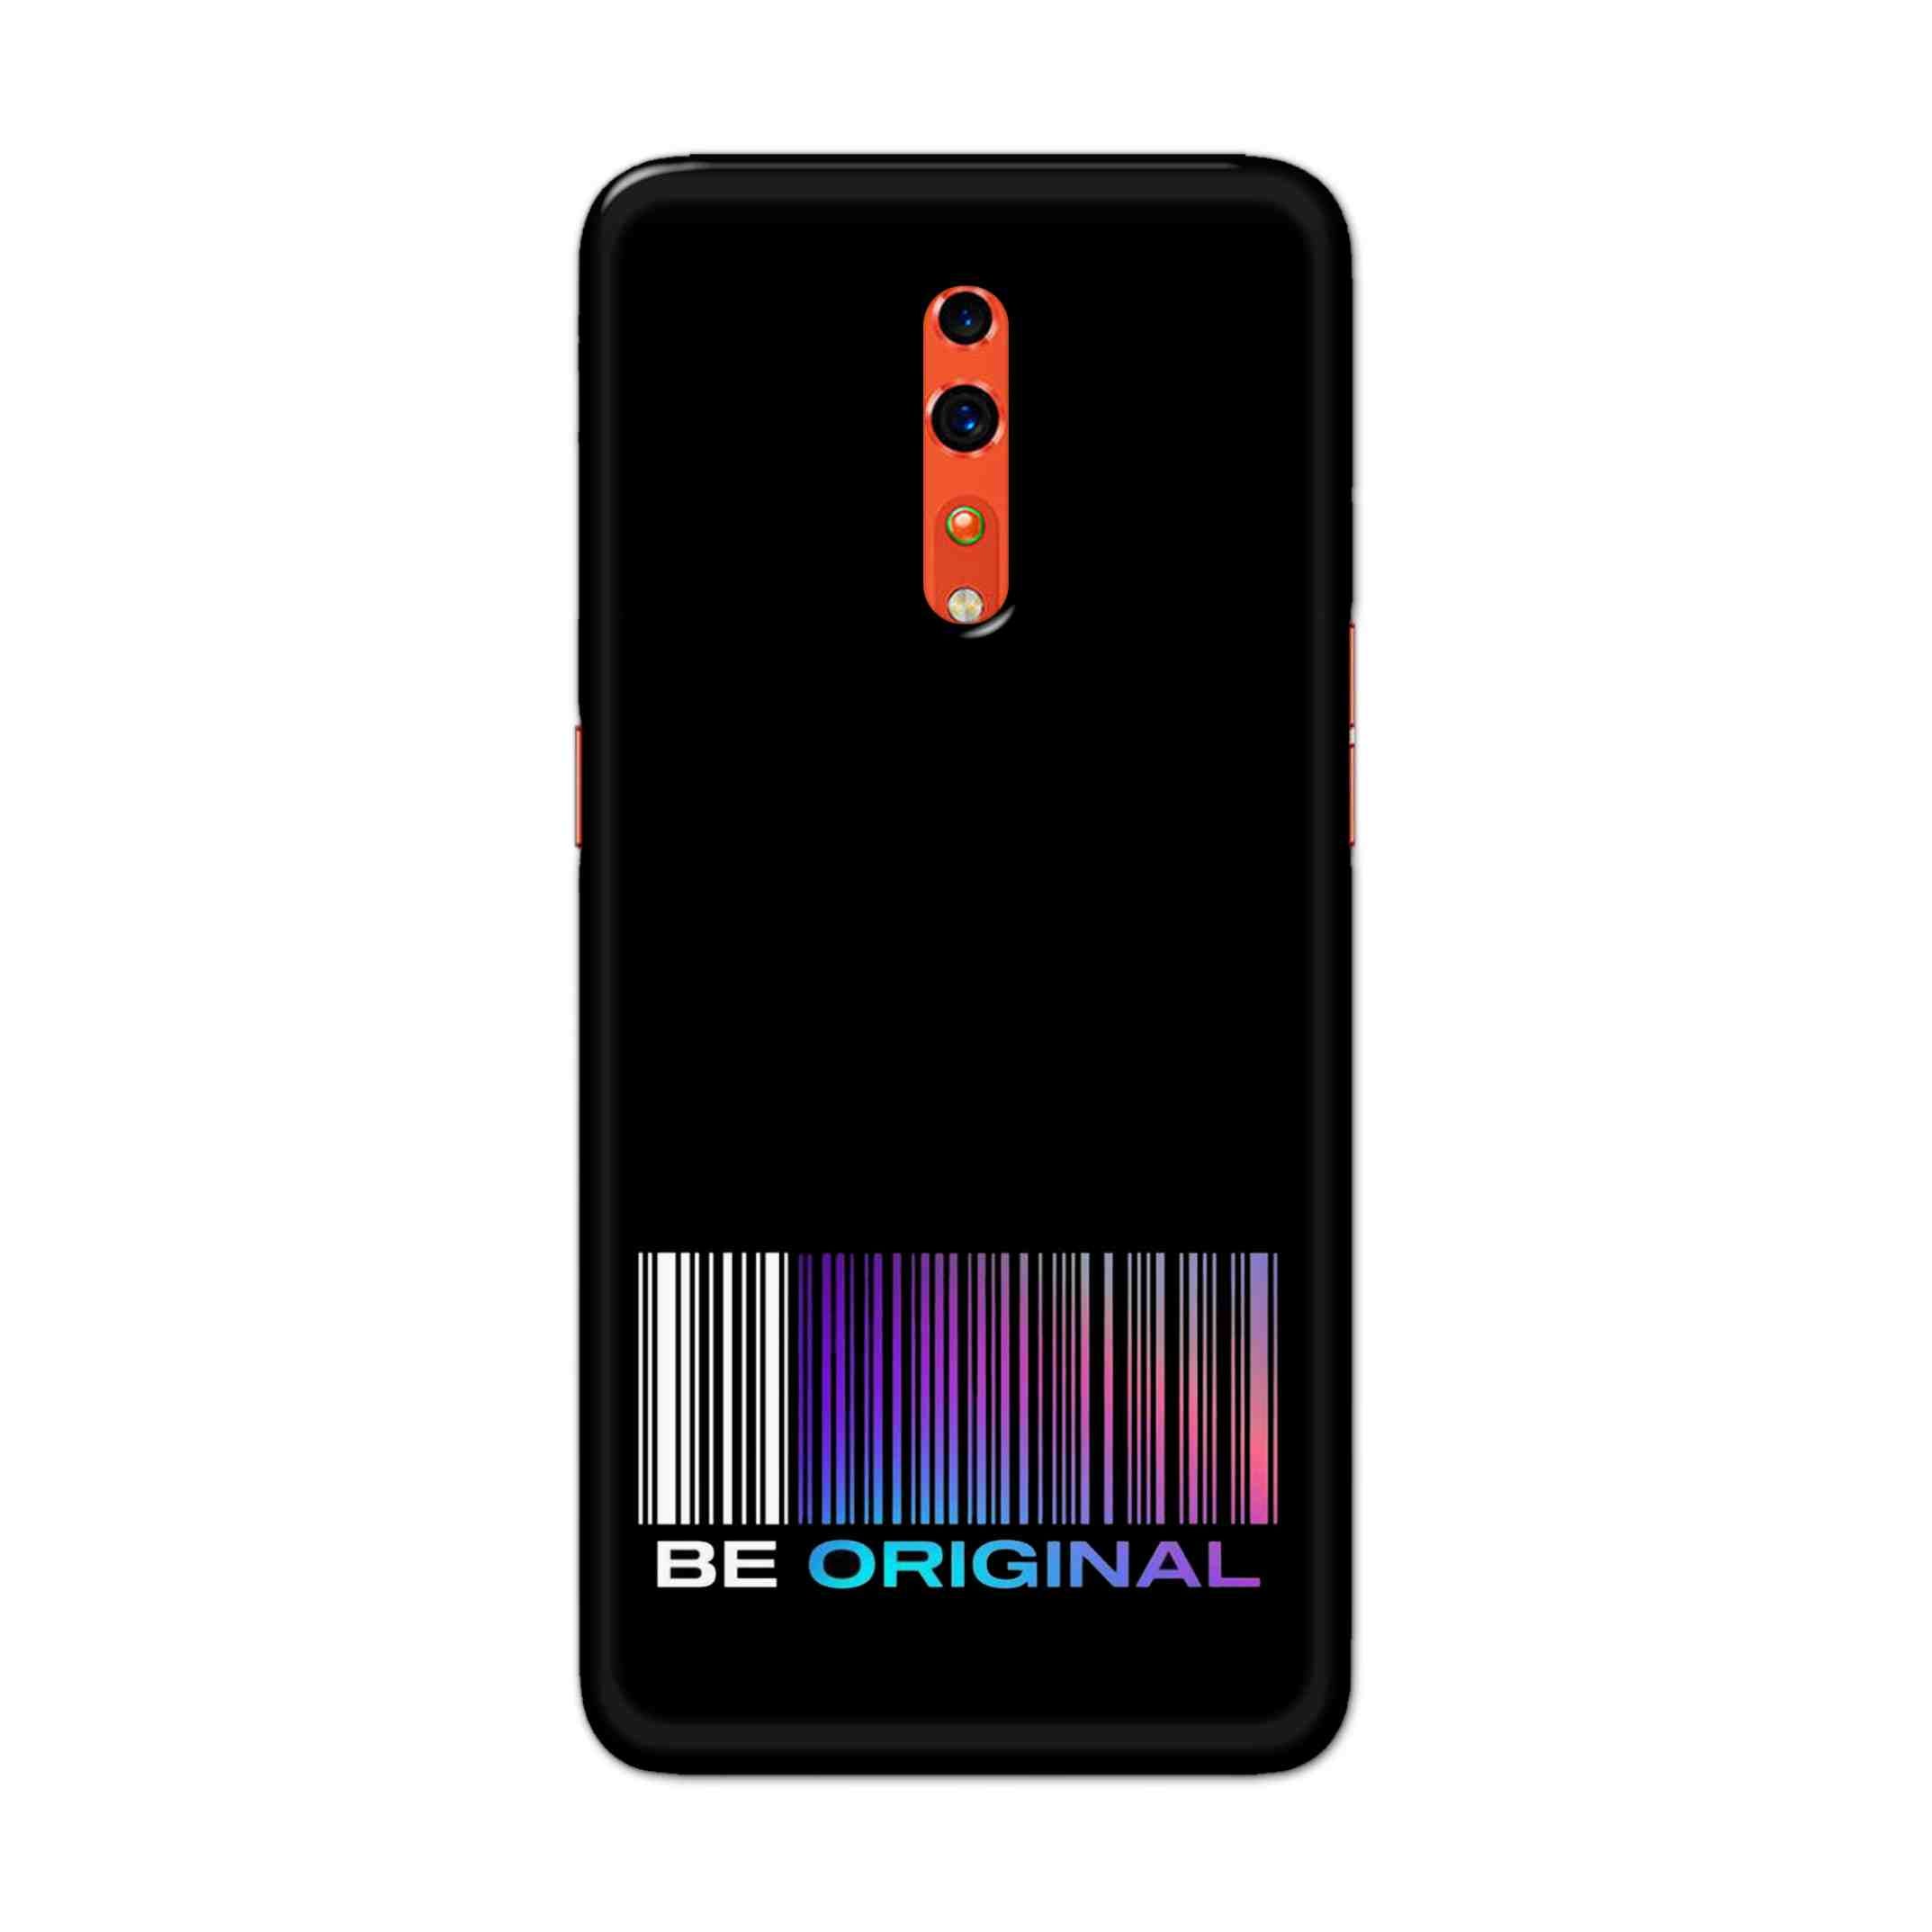 Buy Be Original Hard Back Mobile Phone Case Cover For OPPO Reno Z Online